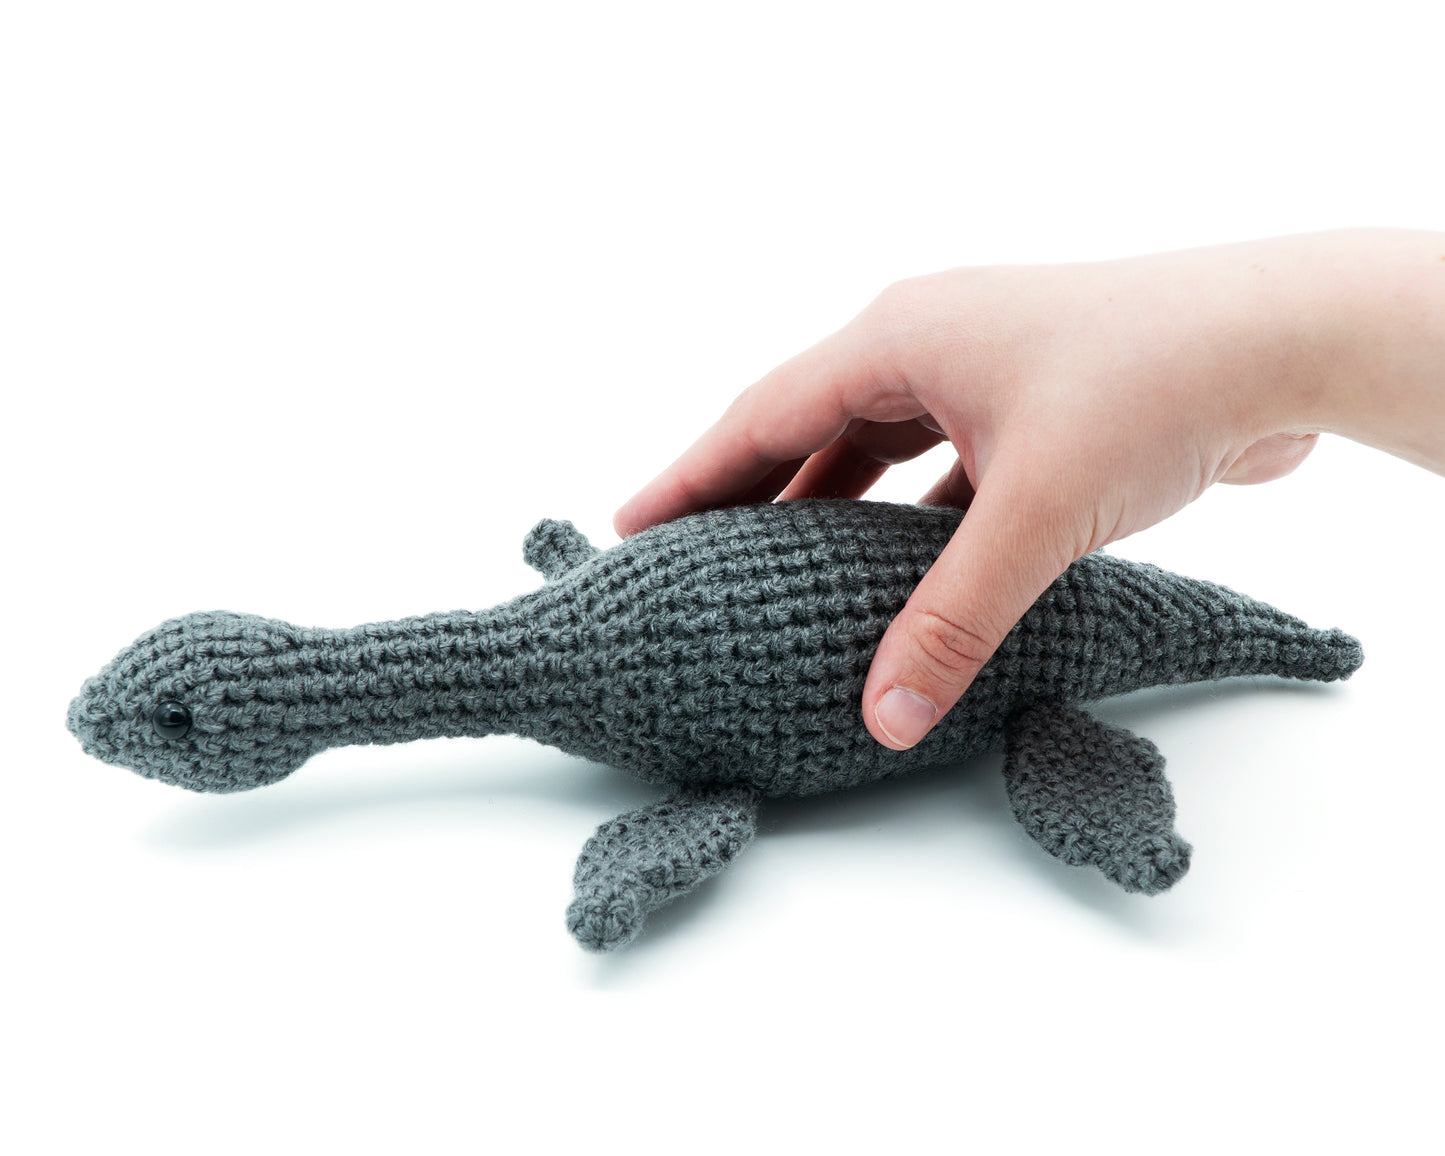 amigurumi crochet plesiosaurus pattern in hand for size comparison